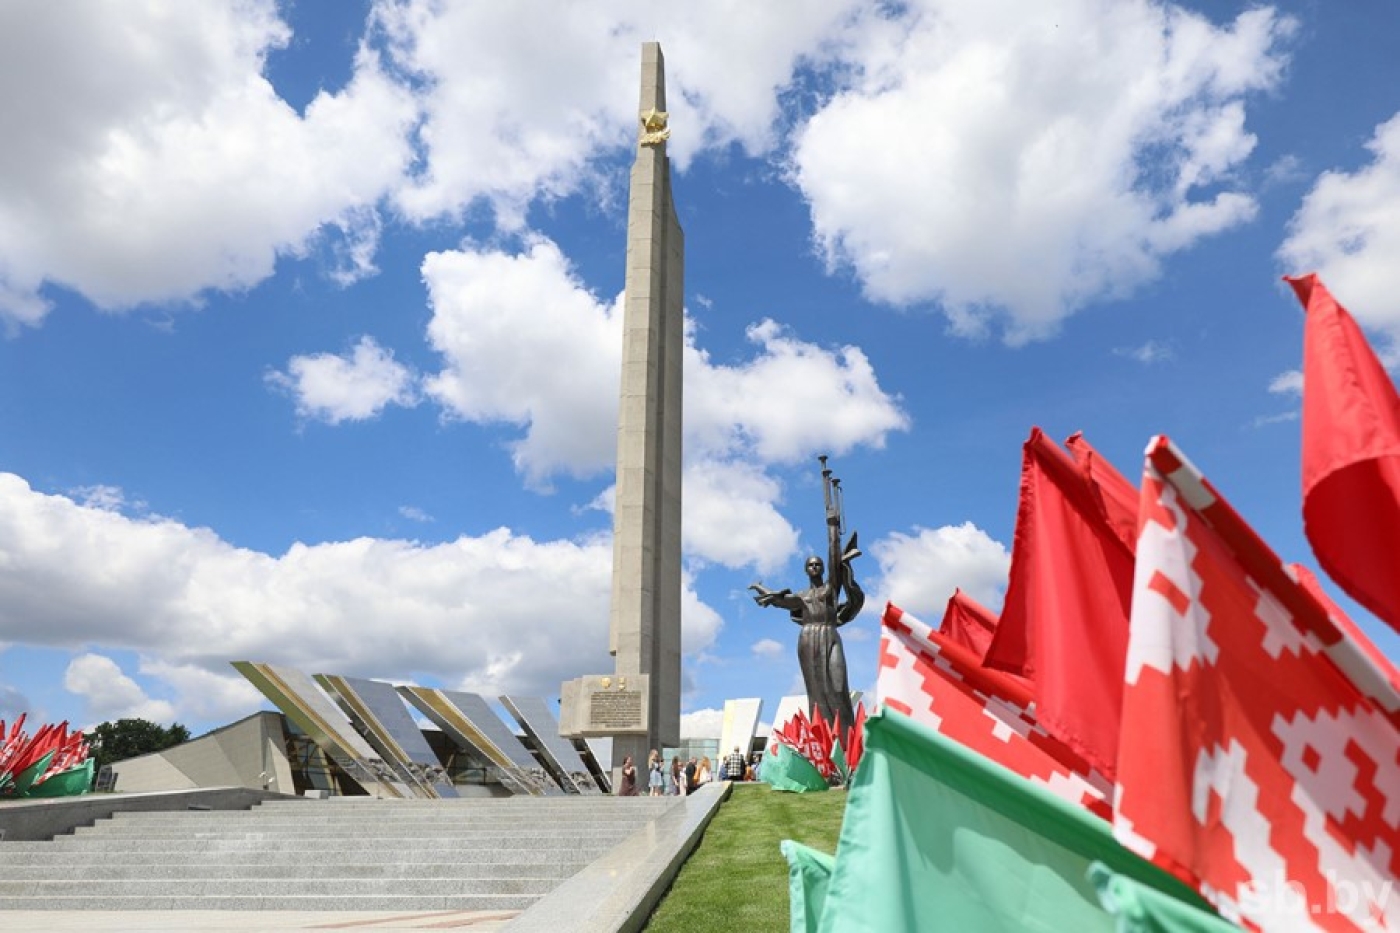 Ровно 50 лет назад Минск стал городом-героем. Какой тернистой дорогой шла столица к почетному званию?